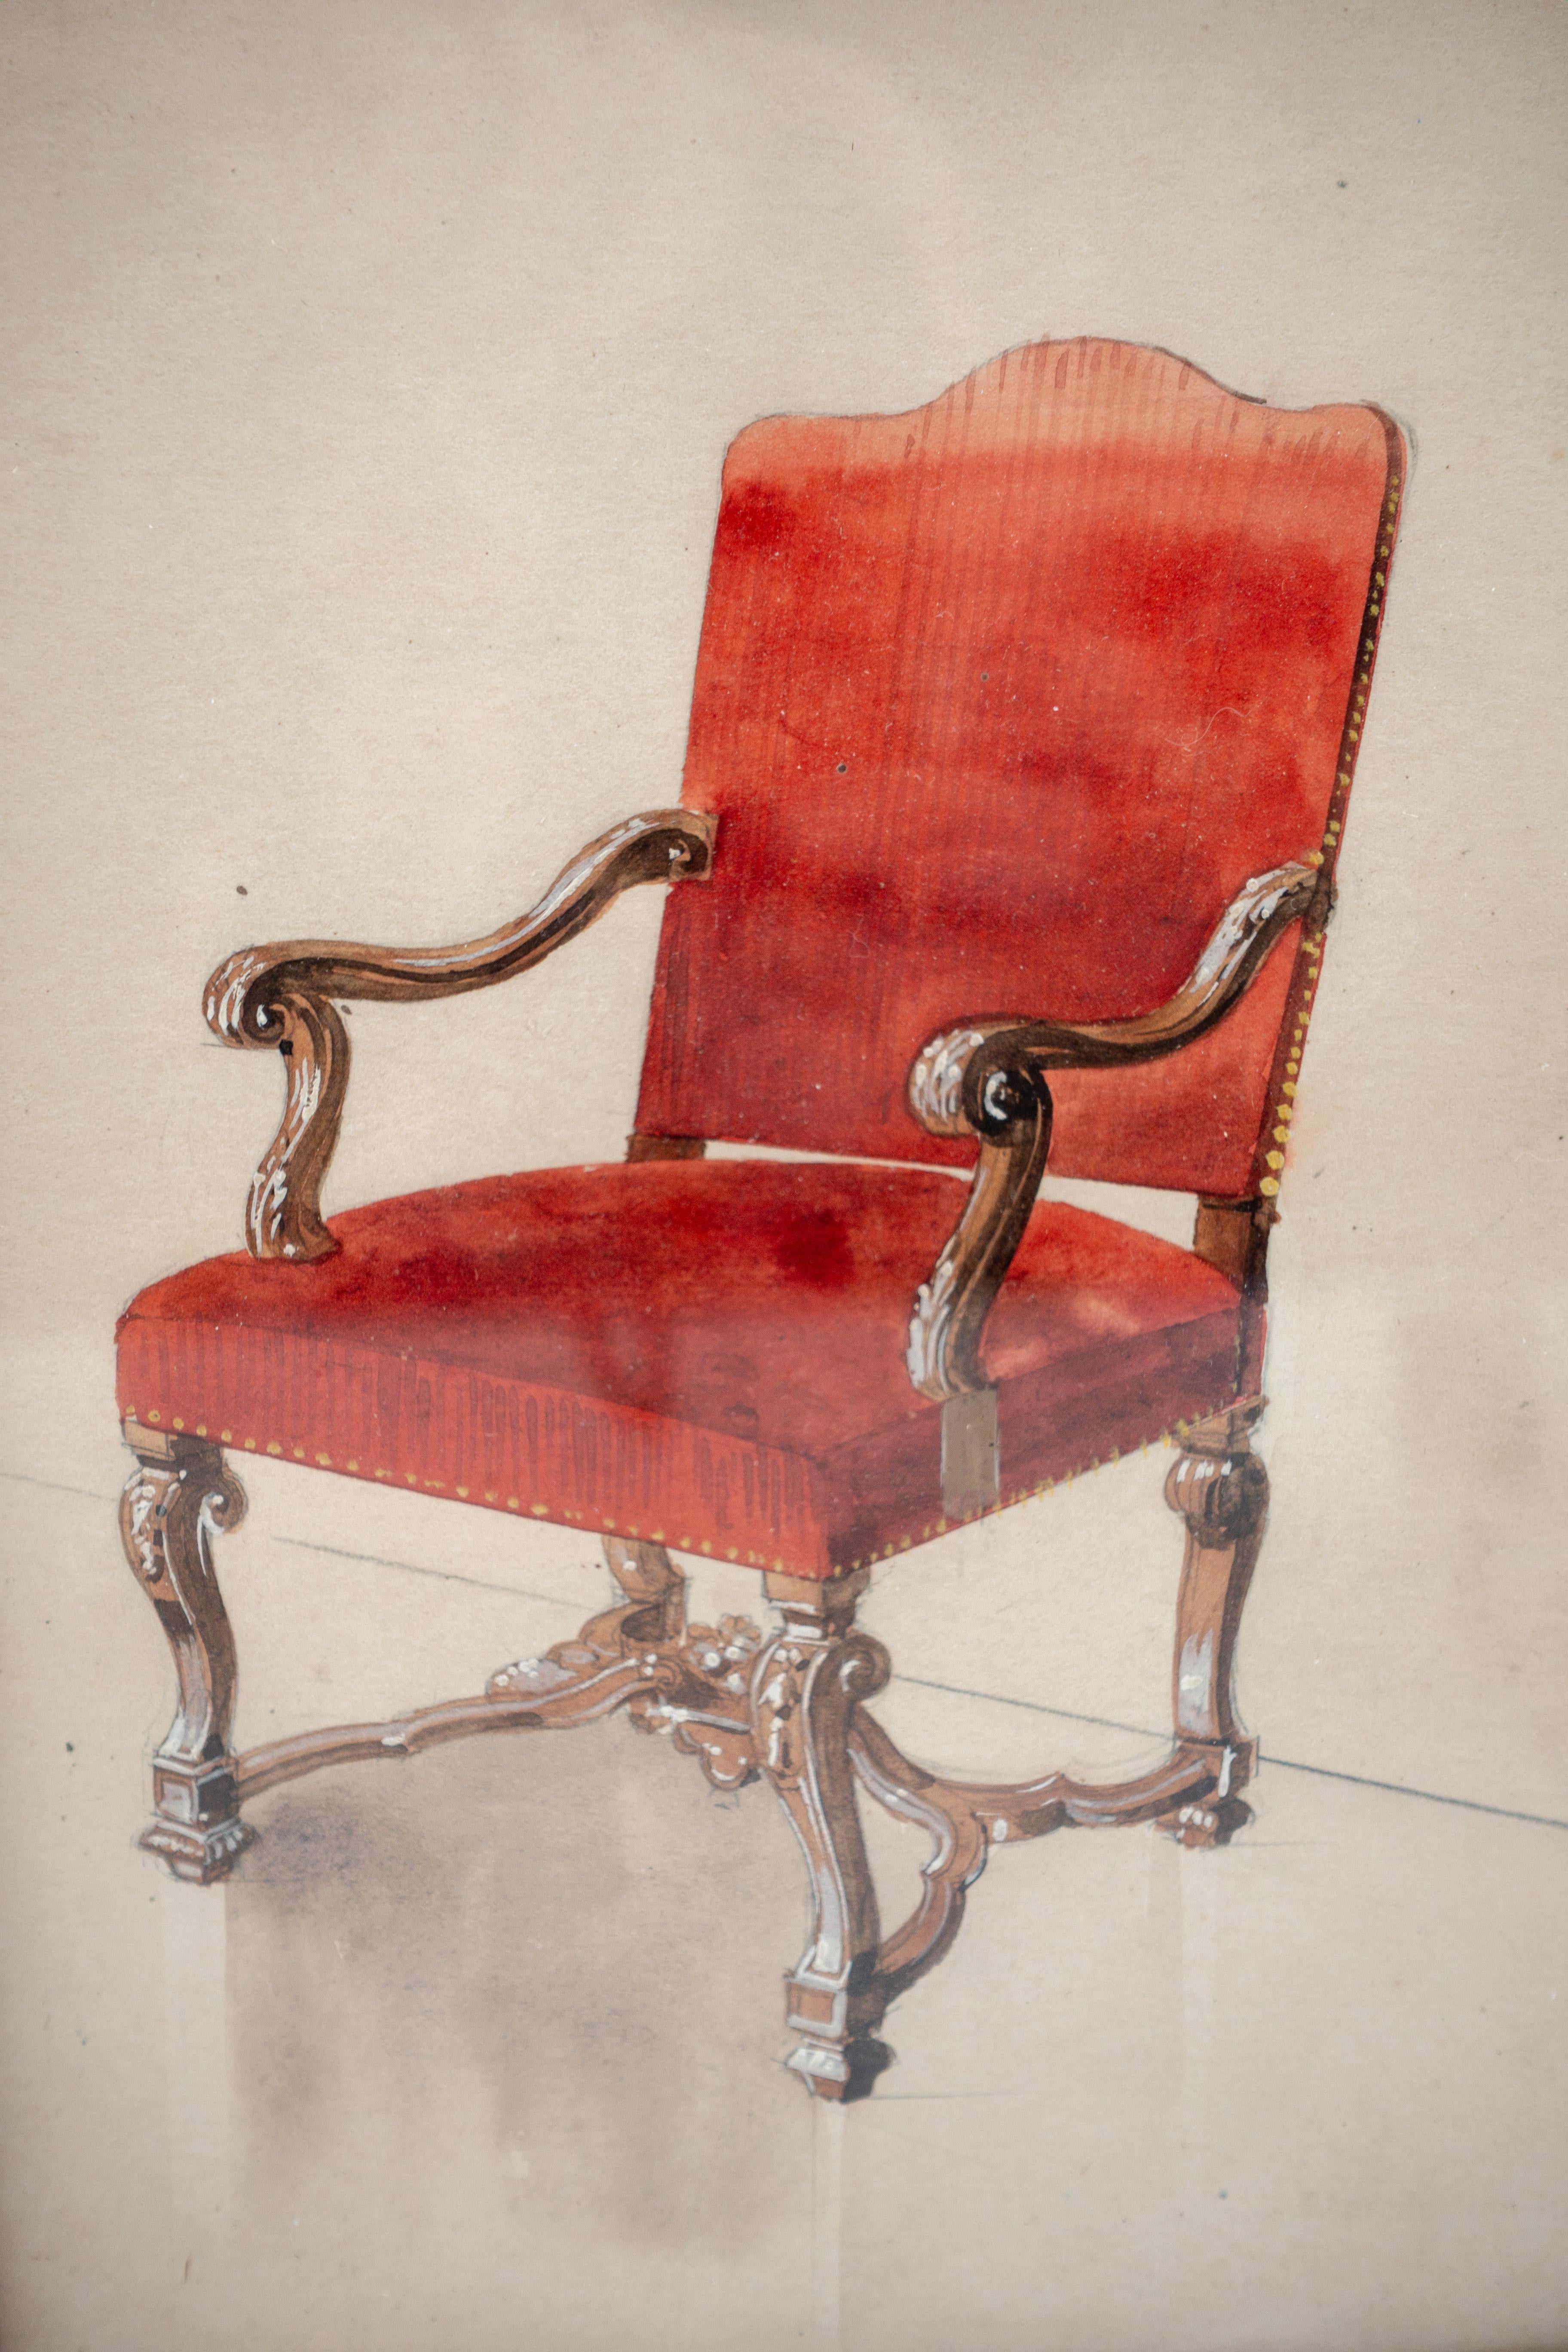 Großartiges gerahmtes französisches Aquarell aus dem 19. Jahrhundert, das einen mit rotem Samtstoff bezogenen Louis-XIV-Stuhl zeigt.